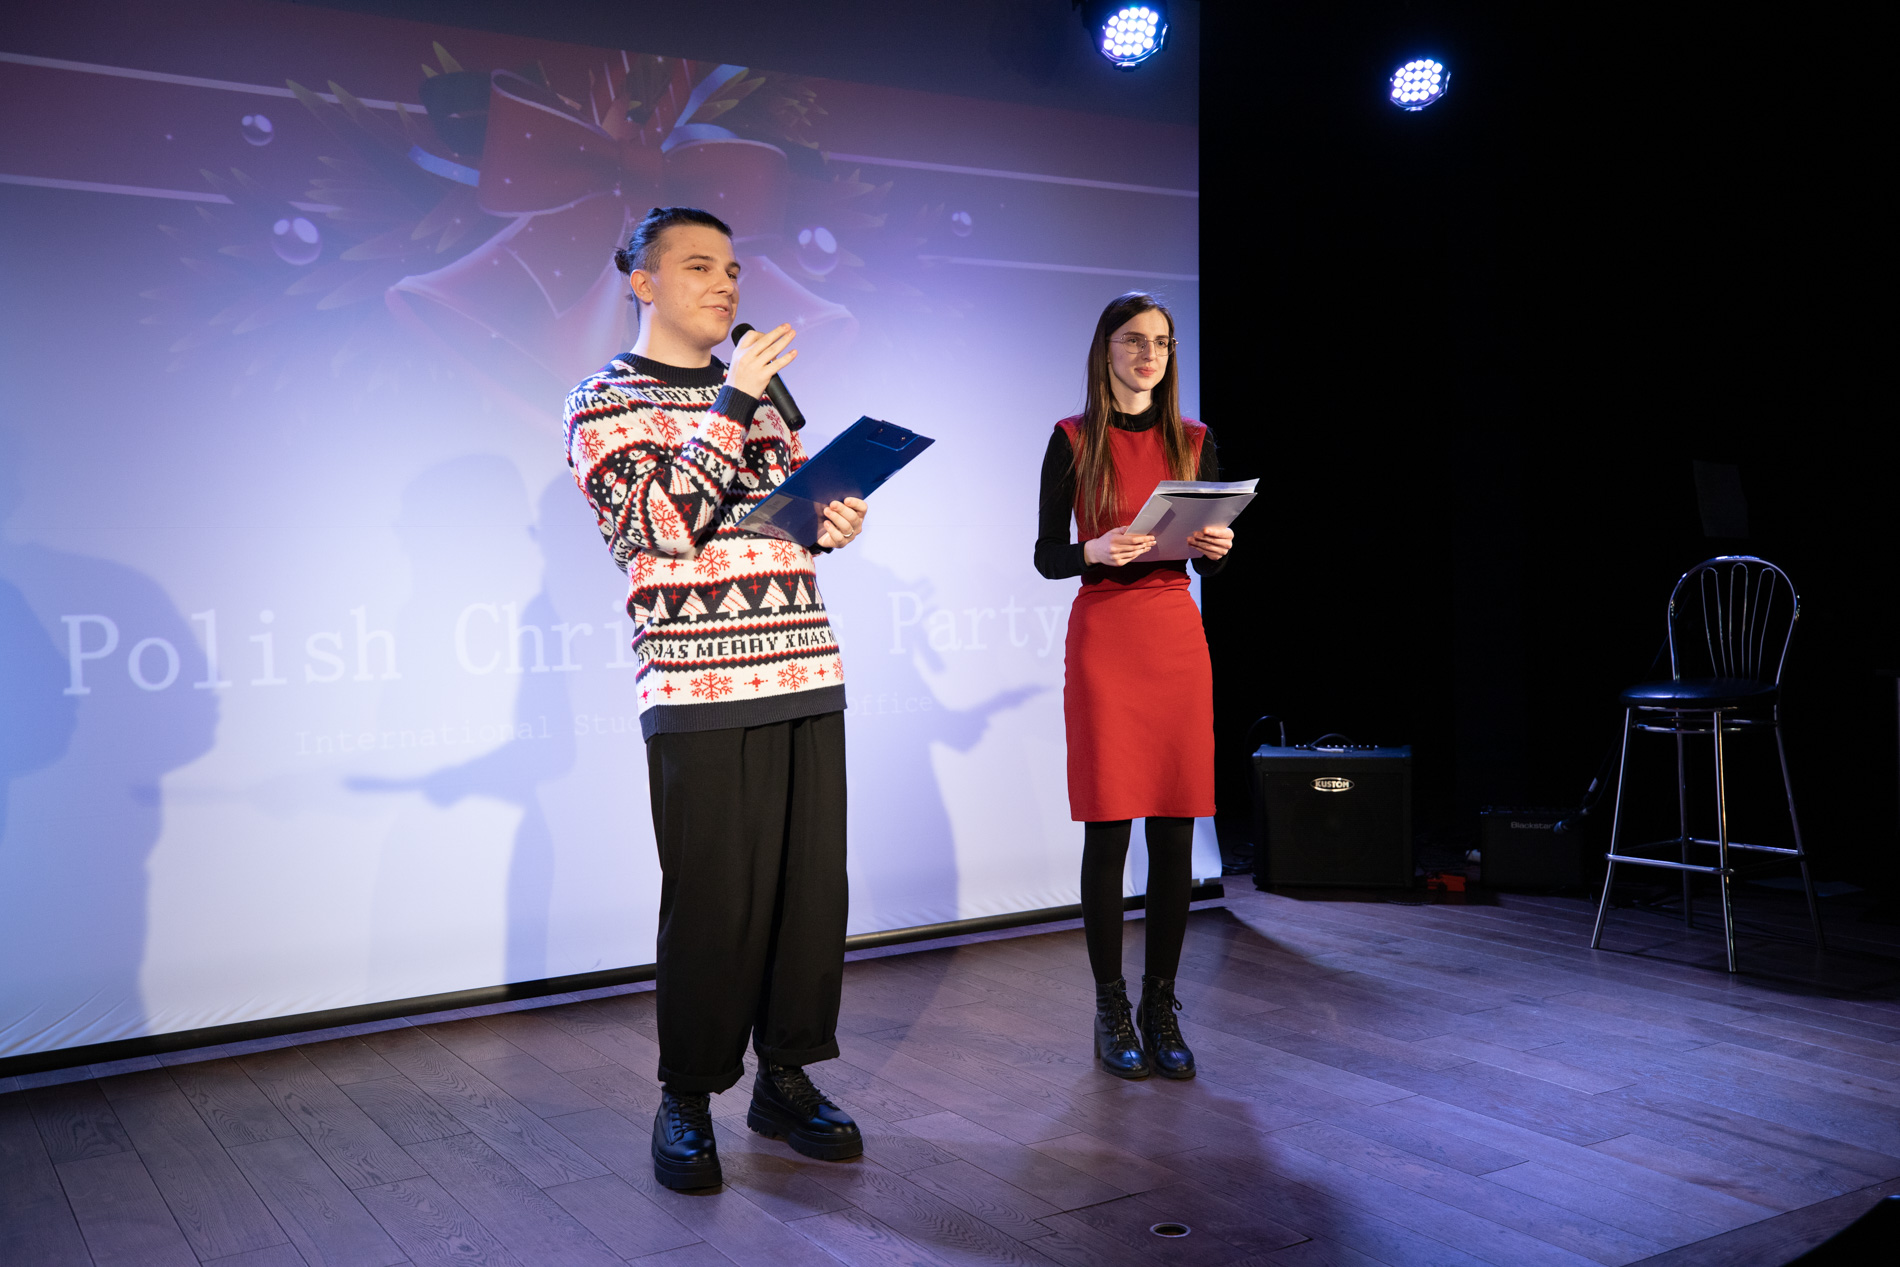 Organizatorzy Polish Christmas Party zapowiadający występy artystyczne w IQ Club